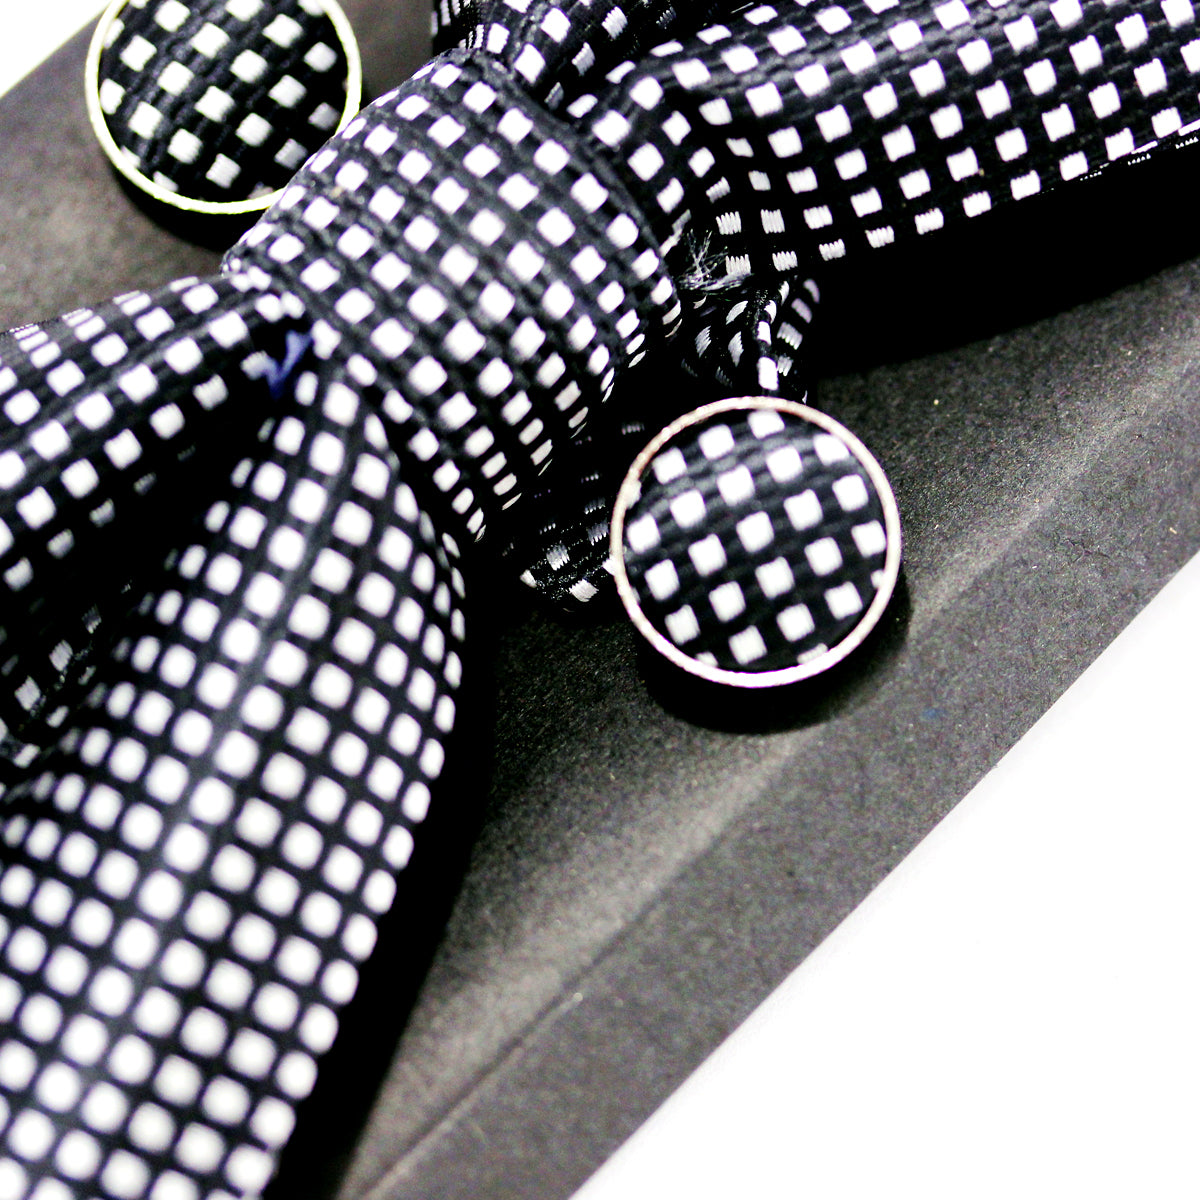 Pre-Tied Adjustable Bow Tie & Handkerchief & Cufflinks Set for Wedding Party